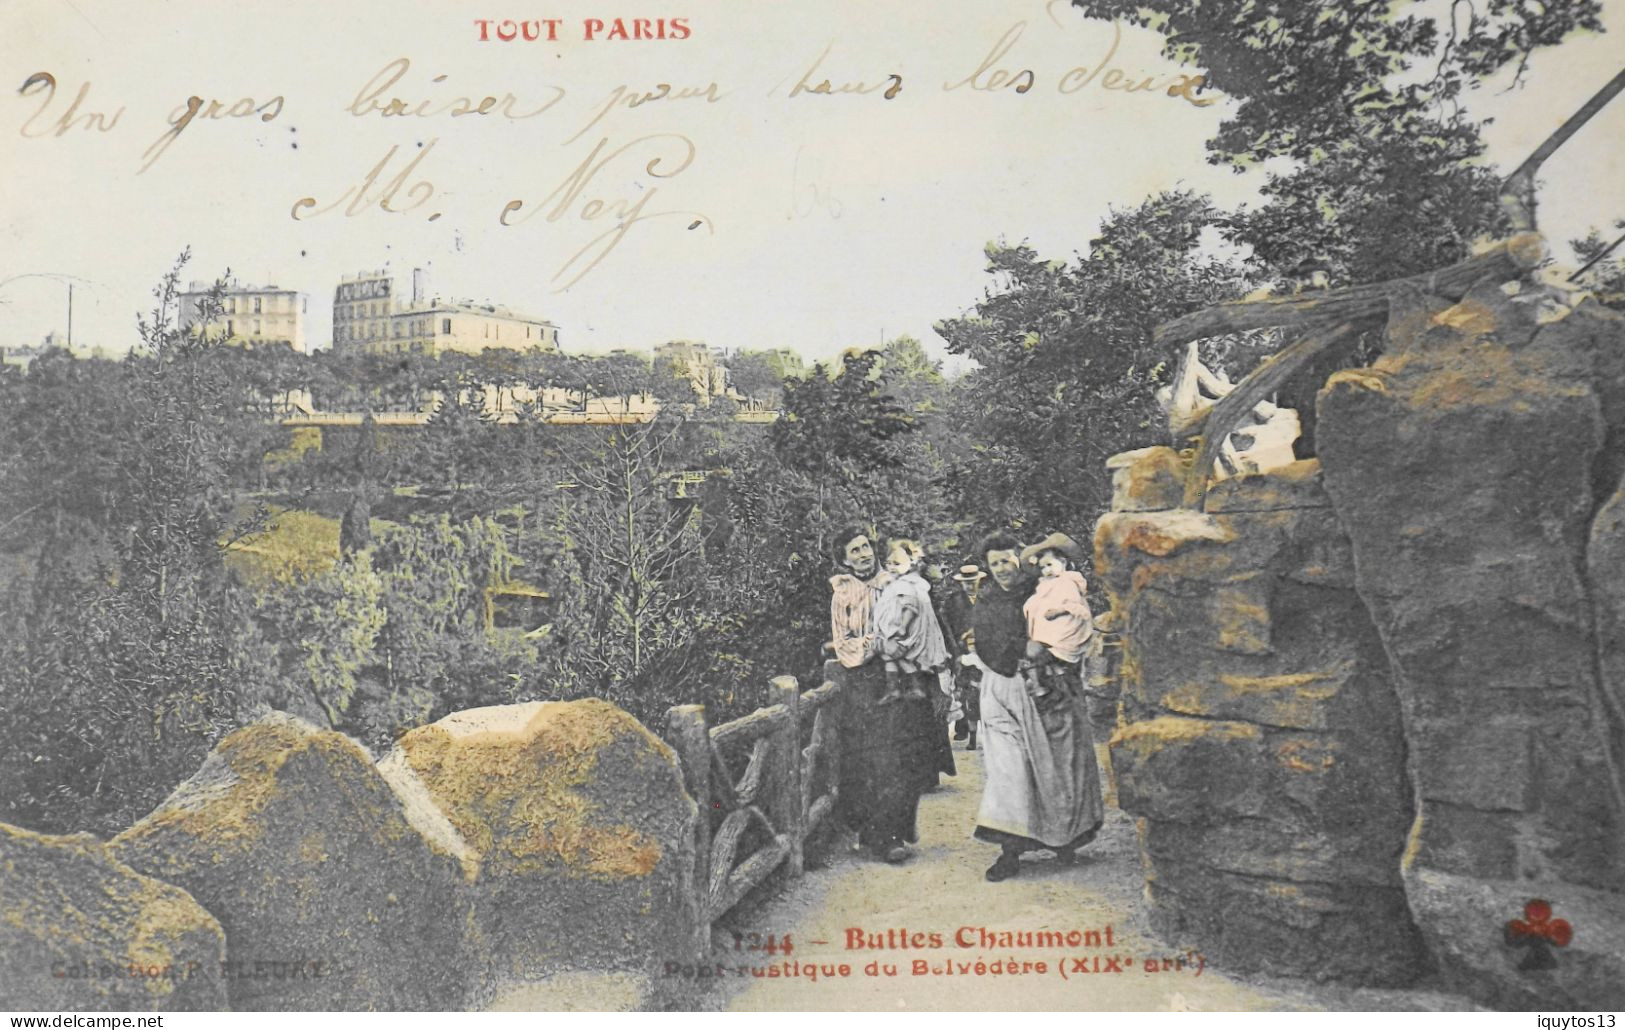 CPA. [75] > TOUT PARIS > N° 1244 - BUTTES CHAUMONT PONT RUSTIQUE DU BELVEDERE - (XIXe Arrt.) - Coll. F. Fleury - TBE - Arrondissement: 19